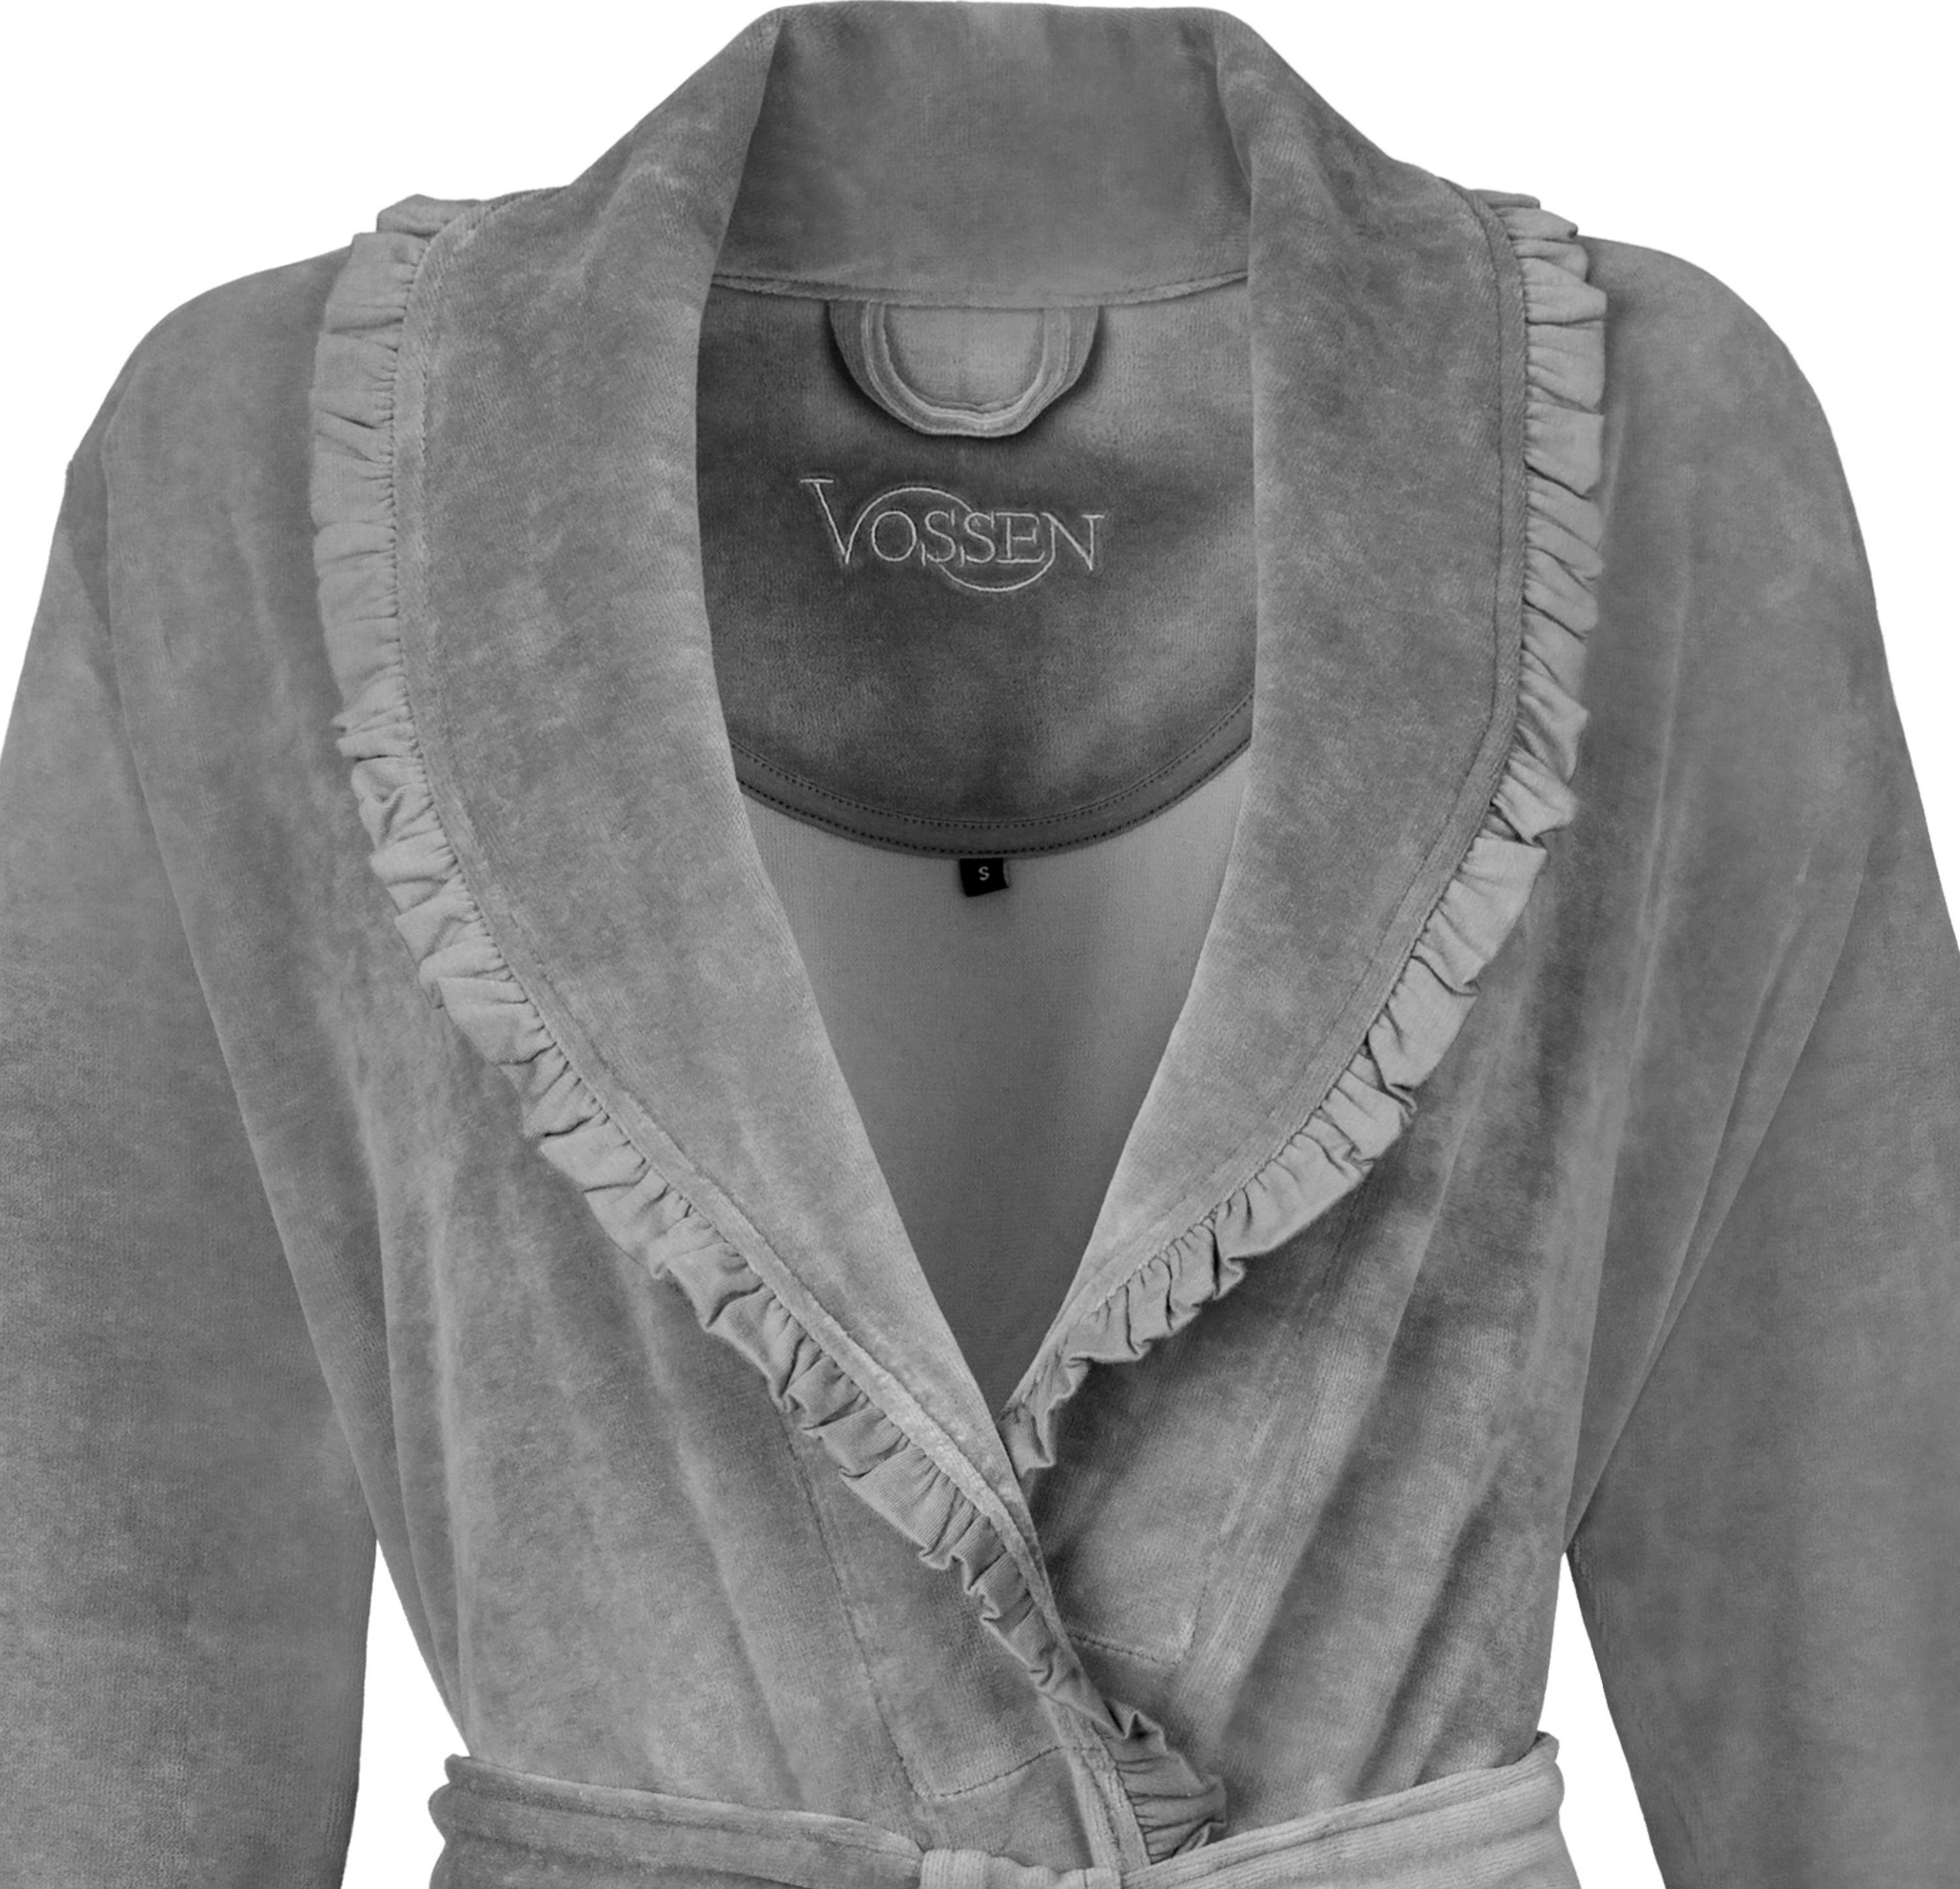 Vossen Design Nicki-Velours, meliert in Ariel, grau verspieltem Damenbademantel Gürtel, Kurzform, Schalkragen,